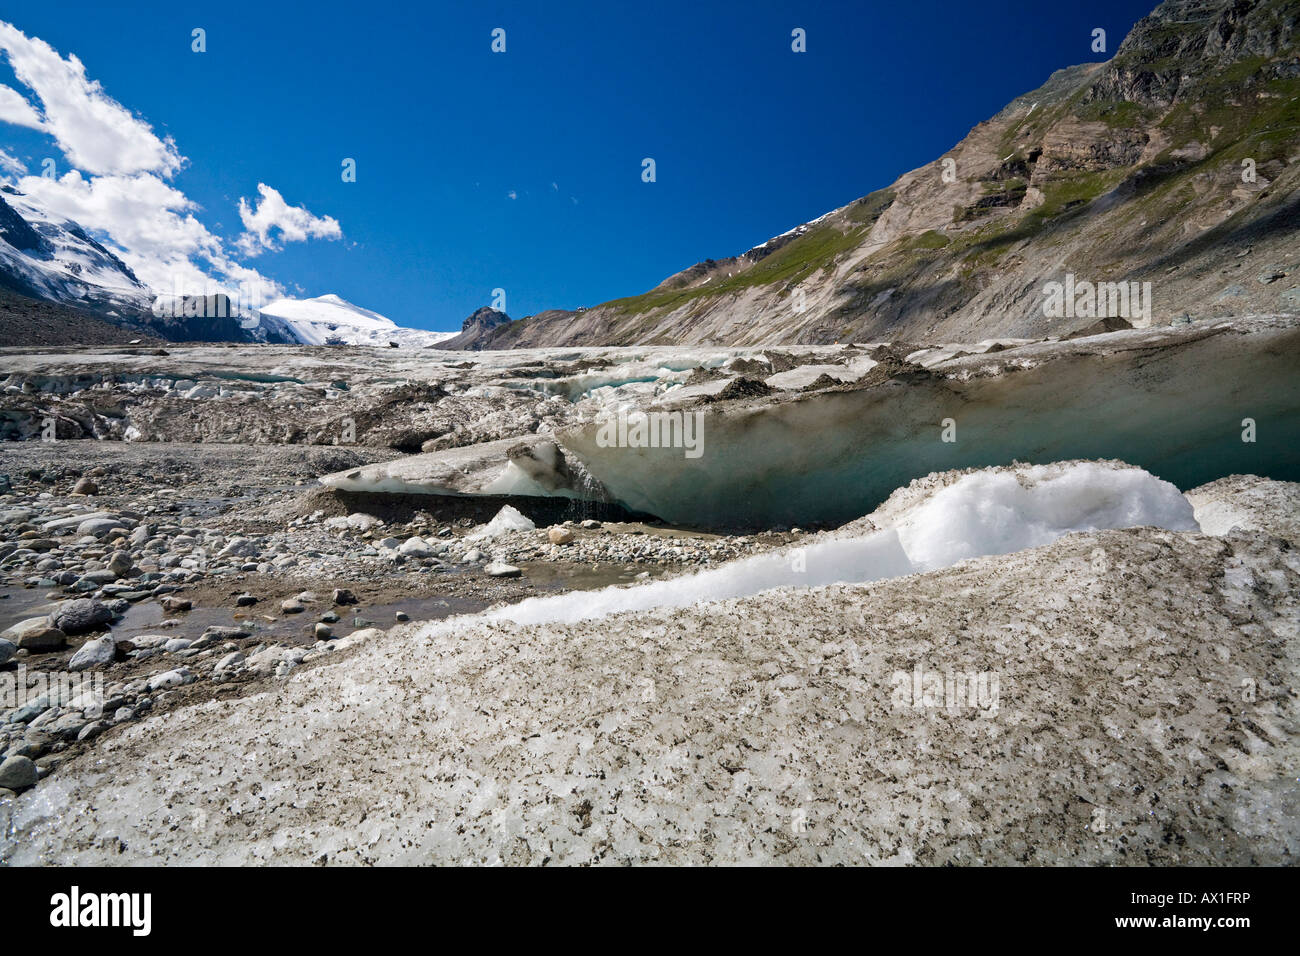 Groupe montagne Grossglockner et glacier Pasterze, parc national Hohe Tauern, Carinthie, Autriche Banque D'Images